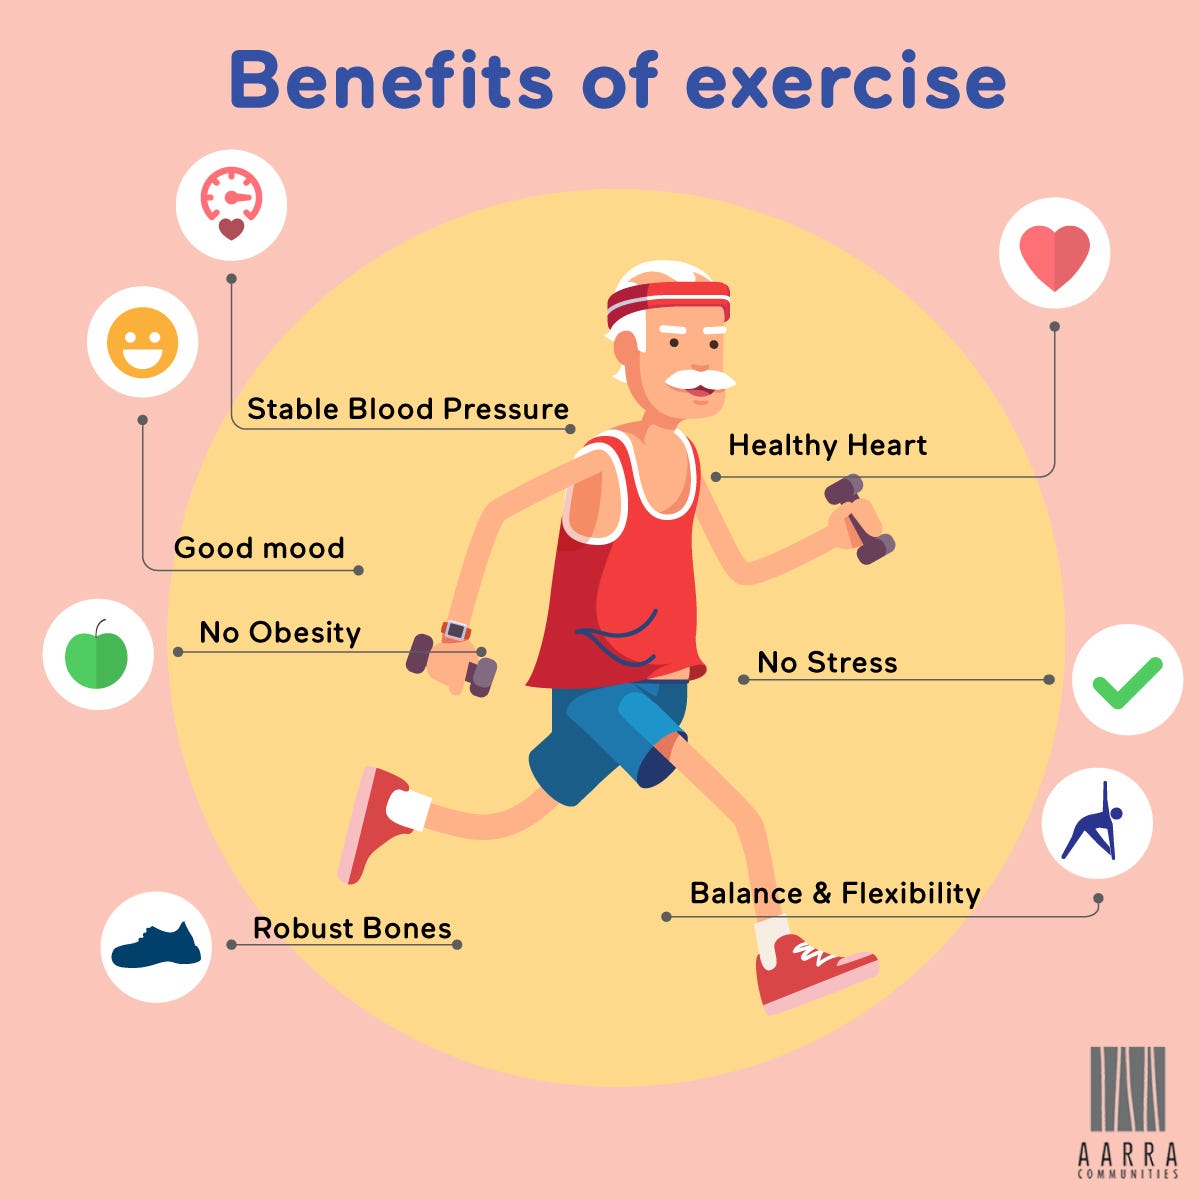 Exercise is great. Exercises по теме Health. Упражнения по теме Health. Health benefits of exercise. Физическая активность инфографика.